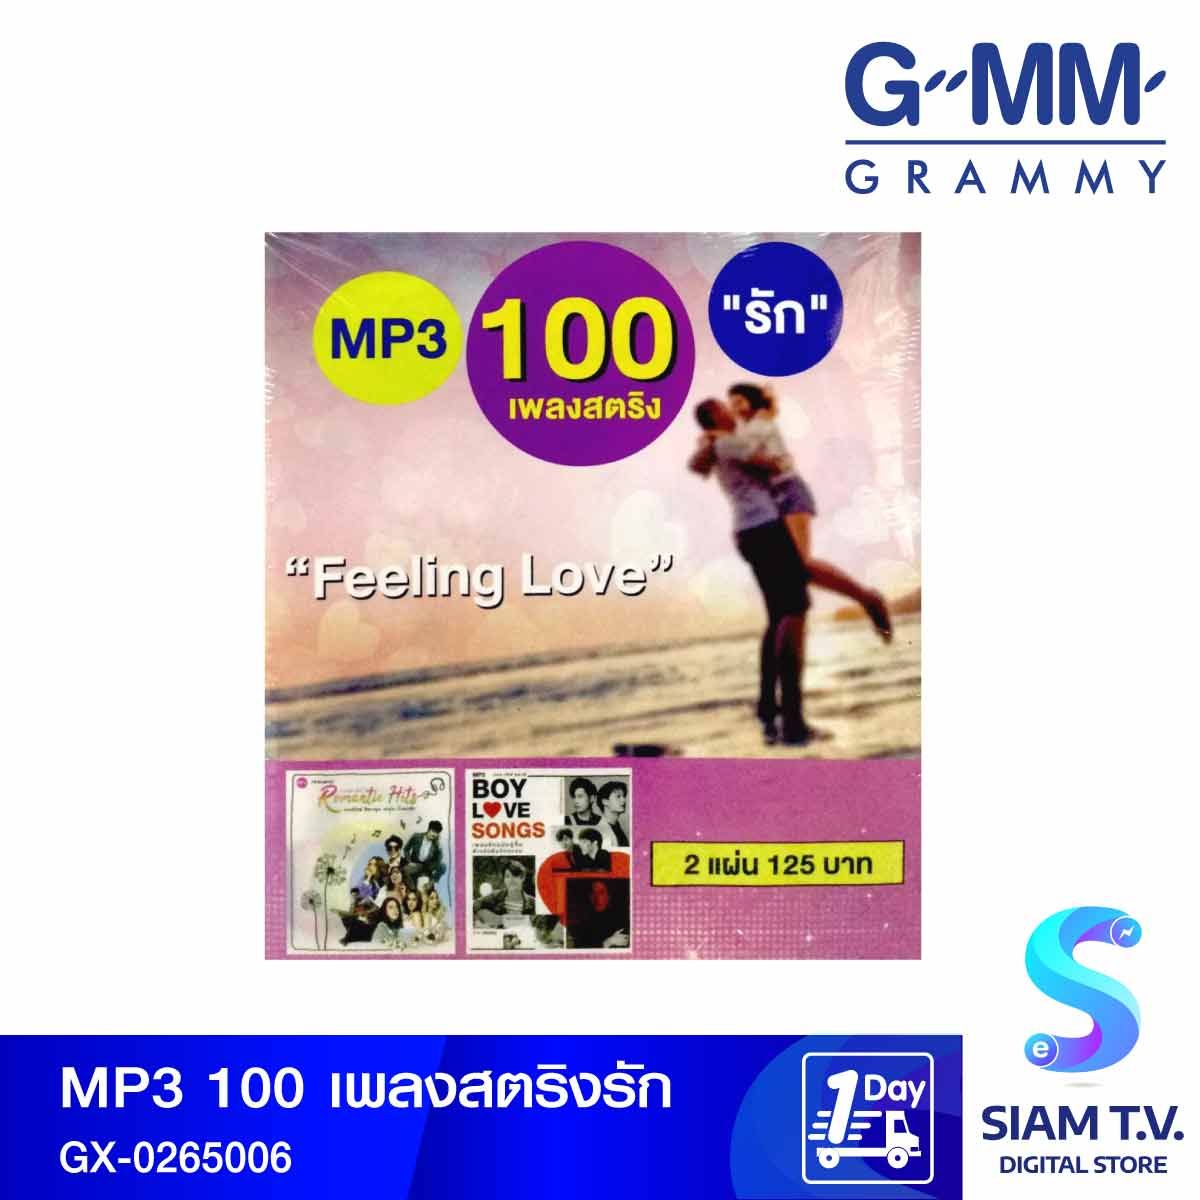 GMM GRAMMY MP3  เพลงสตริงรักPromotion GX-0265006